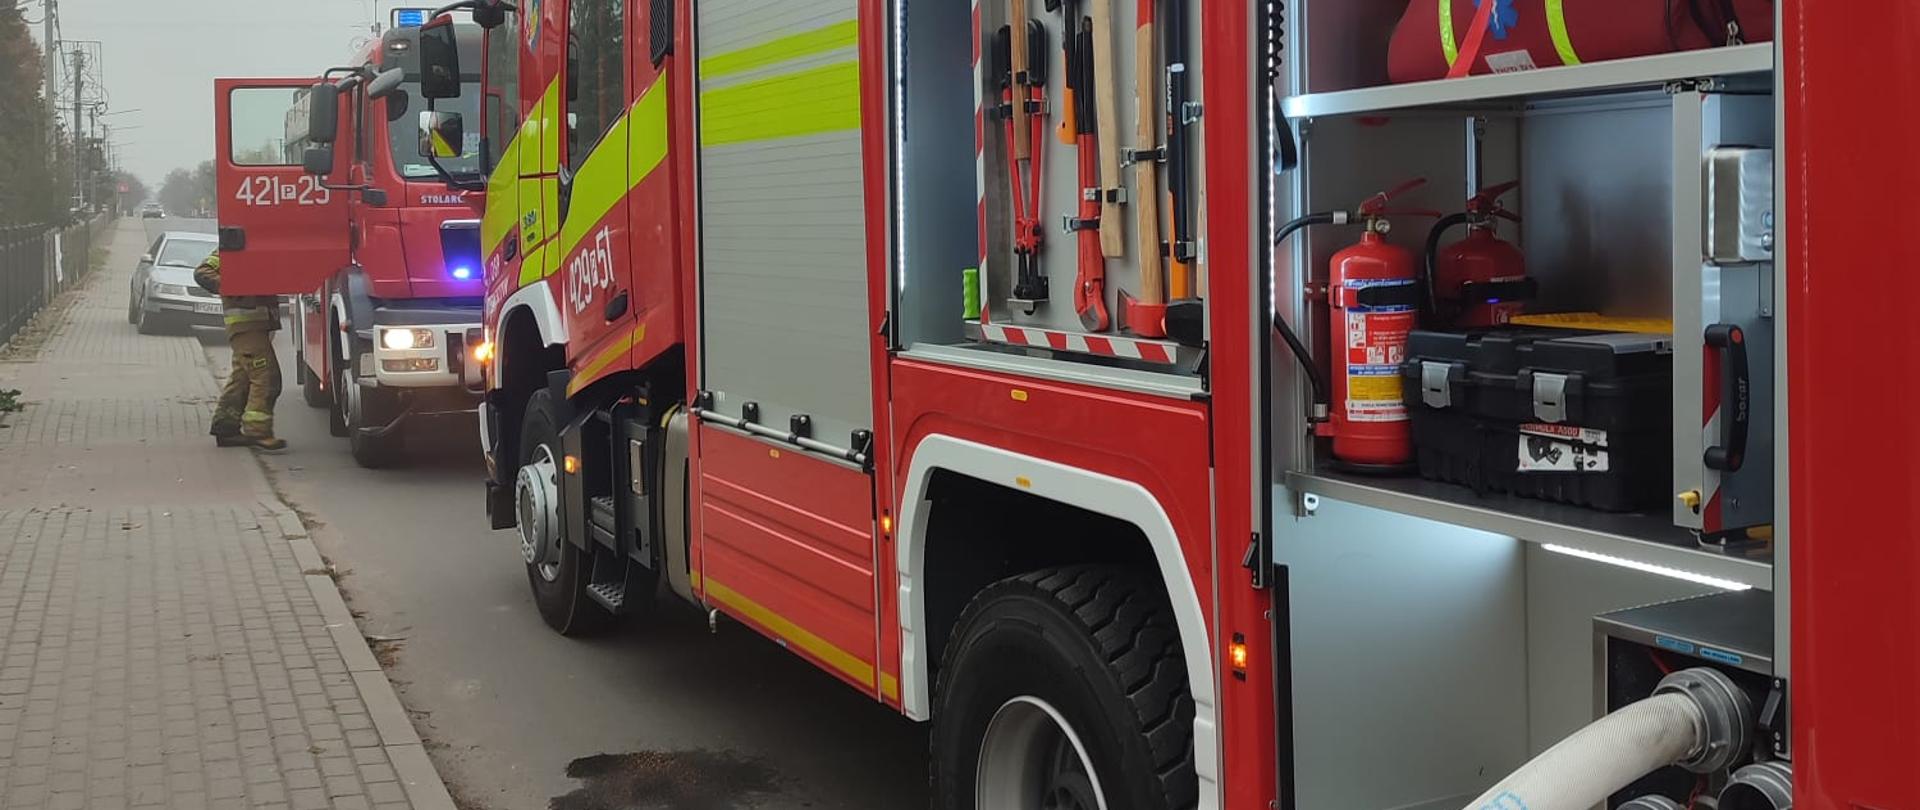 Na zdjęciu widać bok samochodu pożarniczego biorącego udział w akcji gaśniczej. Do samochodu podłączona jest wąż gaśniczy